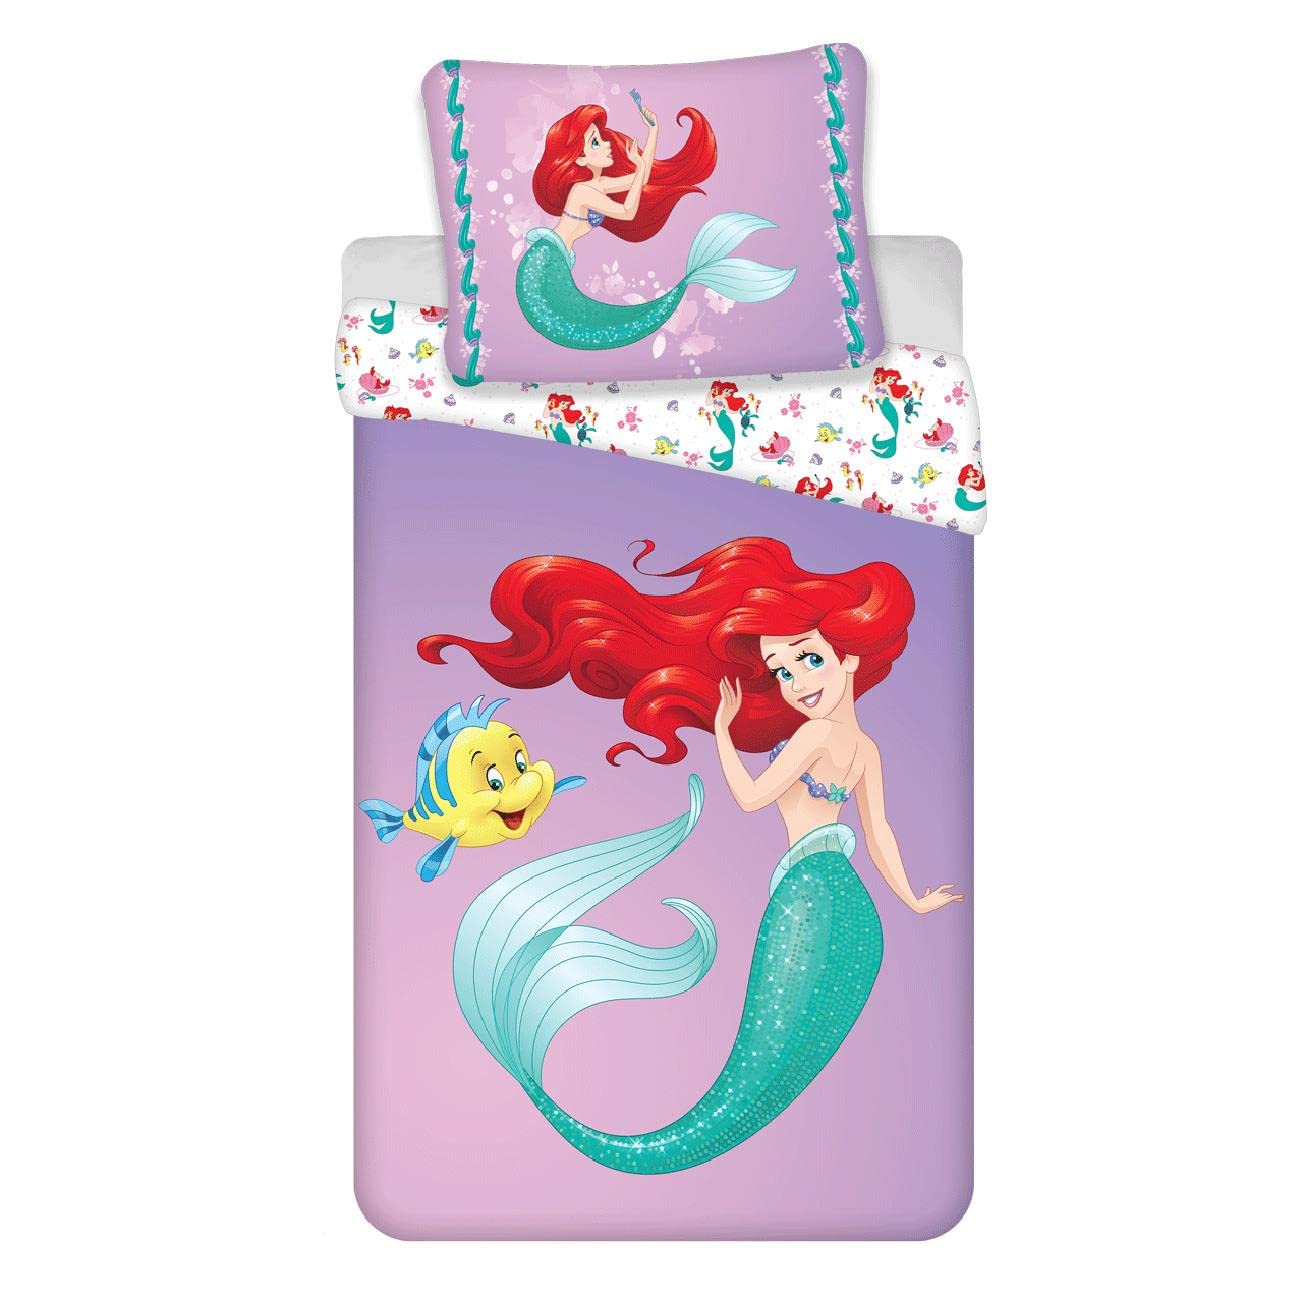 LITTLE MERMAID Disney Princess Ariel Under the Sea Single Cotton Duvet Cover Set - European Size Purple